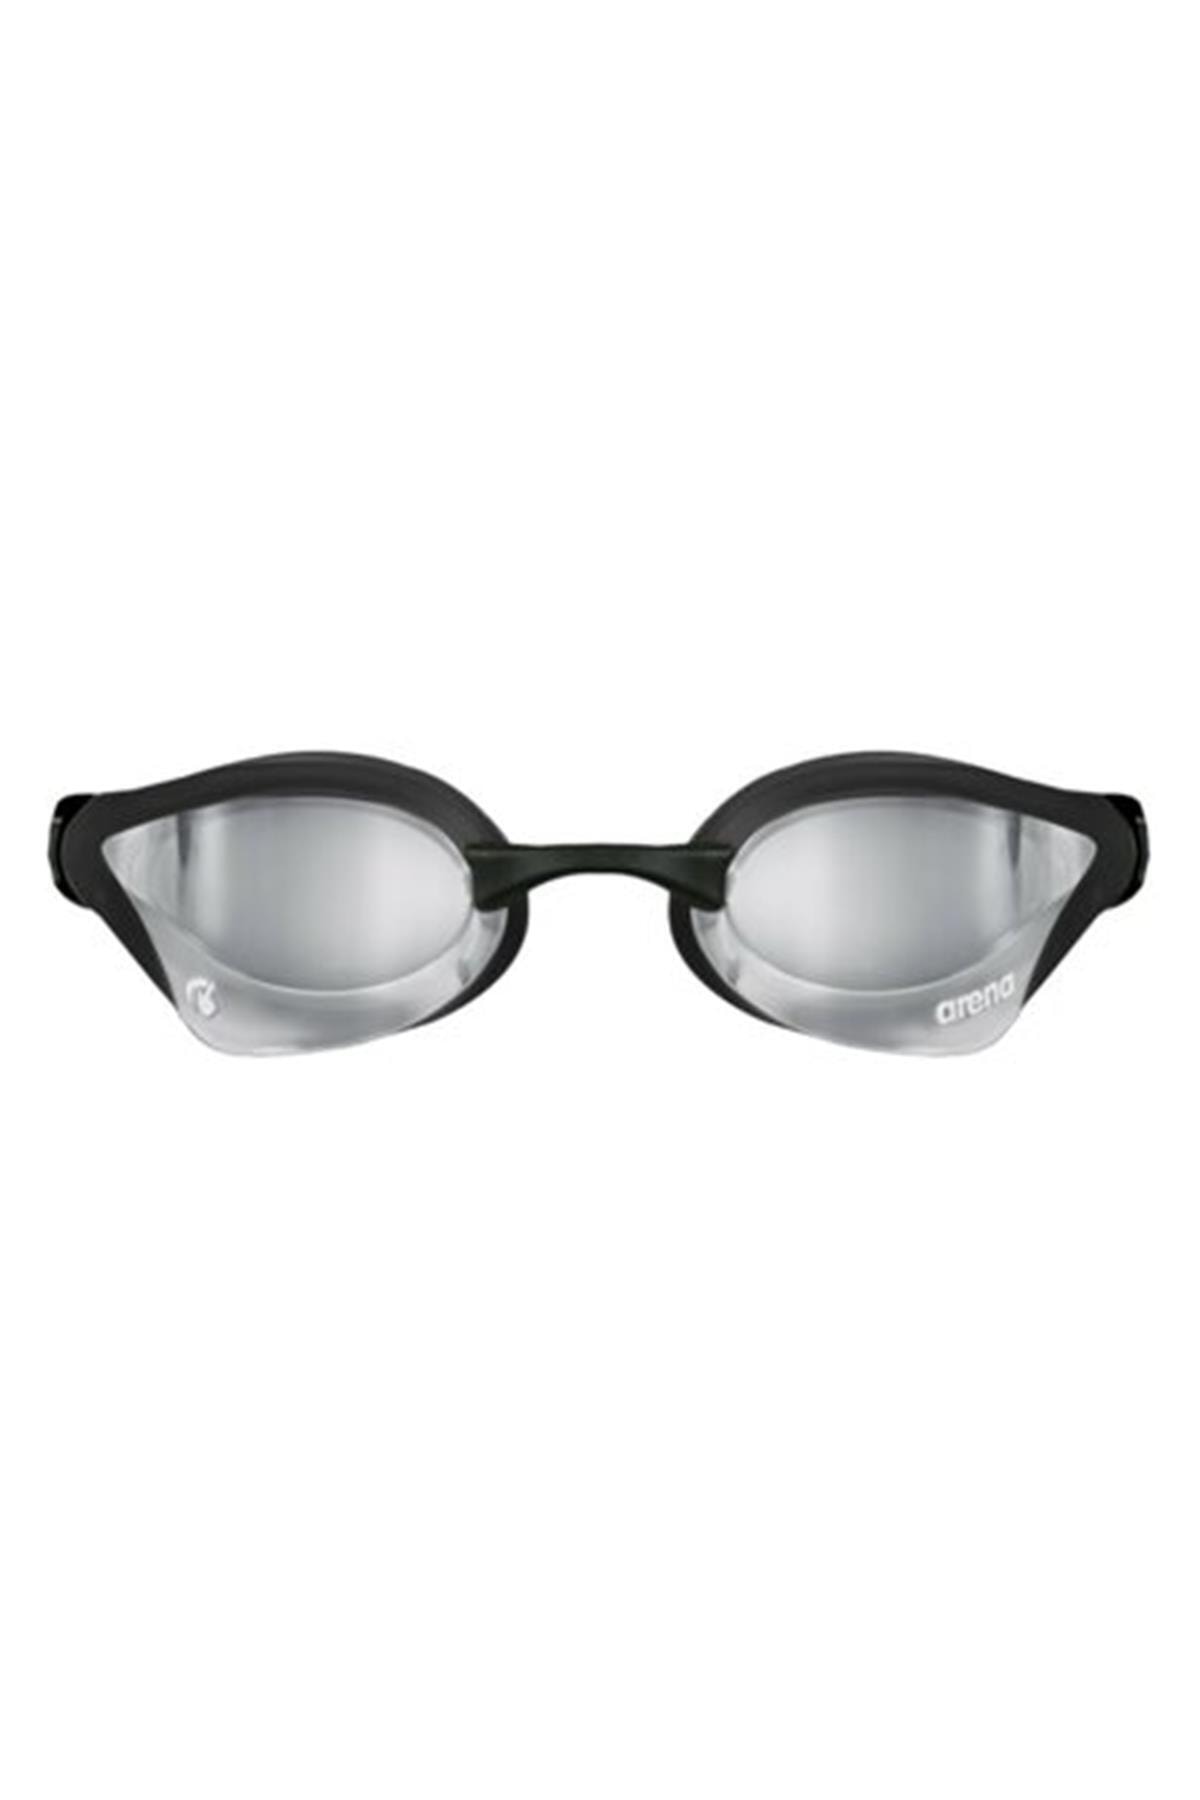 Arena عینک مسابقه ای آینه سوایپ Core Cobra